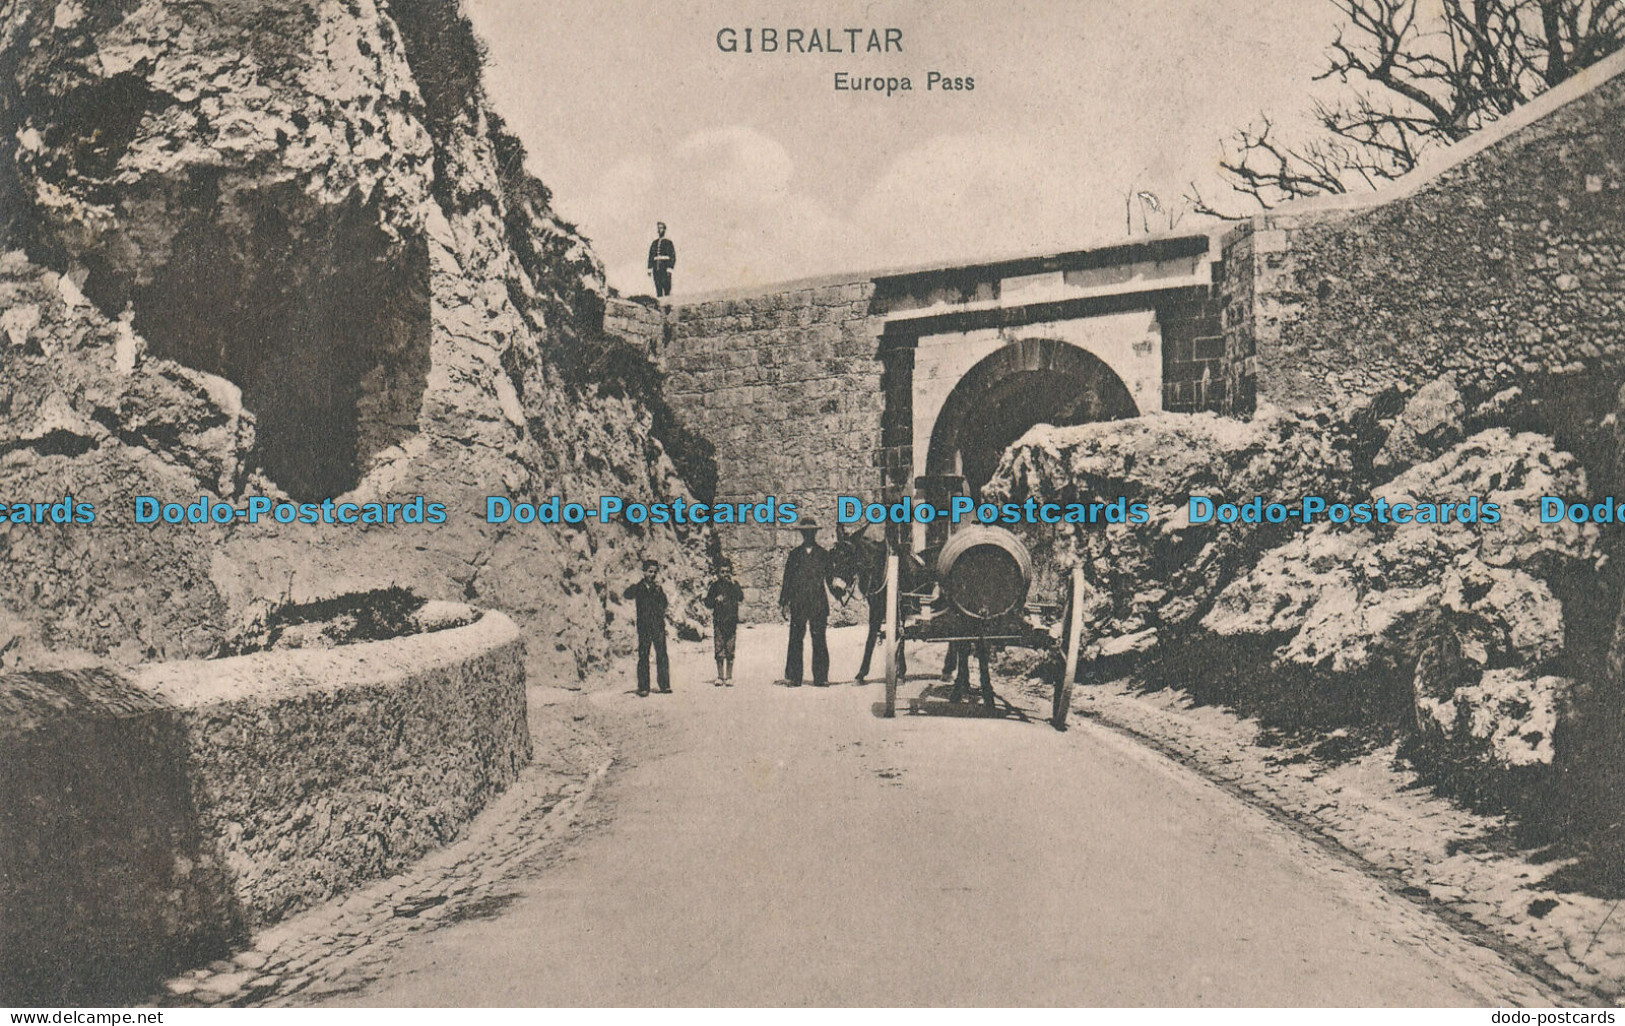 R009217 Gibraltar. Europa Pass. A. Benzaquen. No 34 - Monde